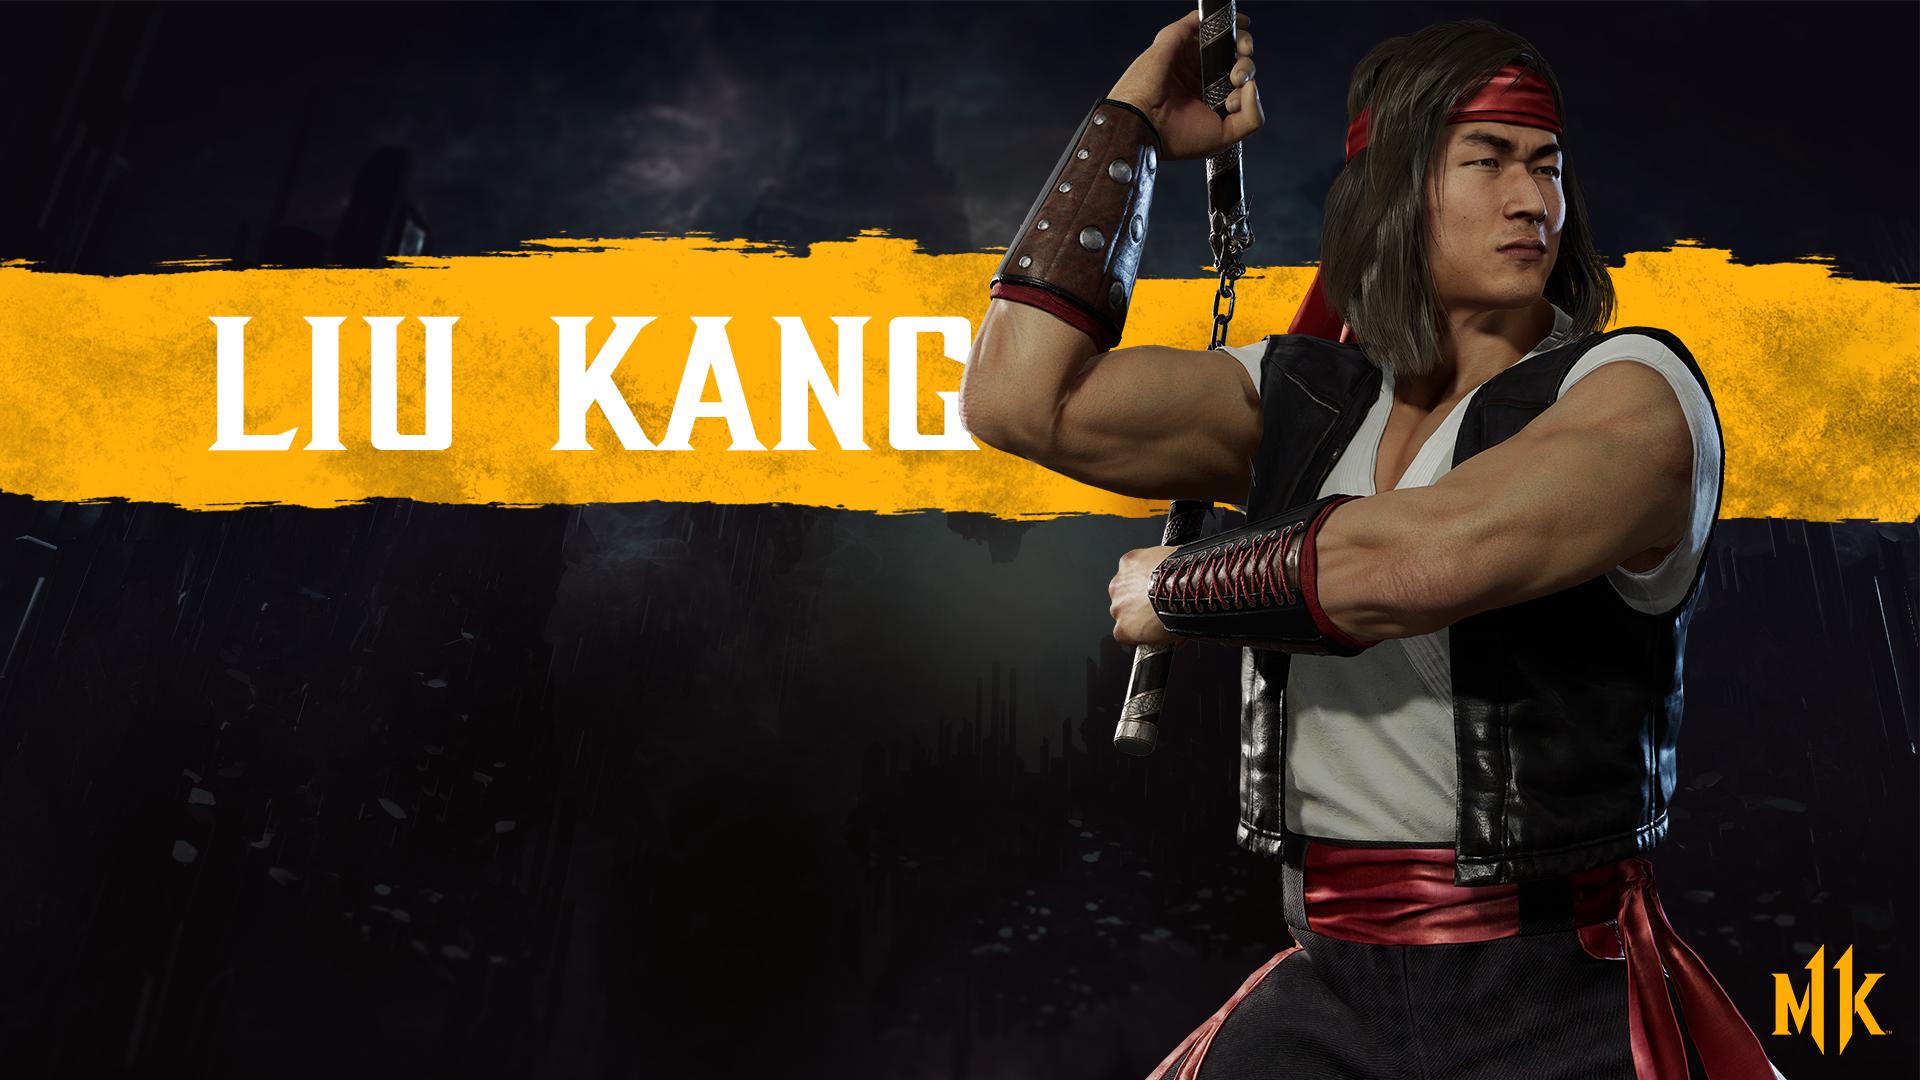 Mortal Kombat 11 background - Liu Kang